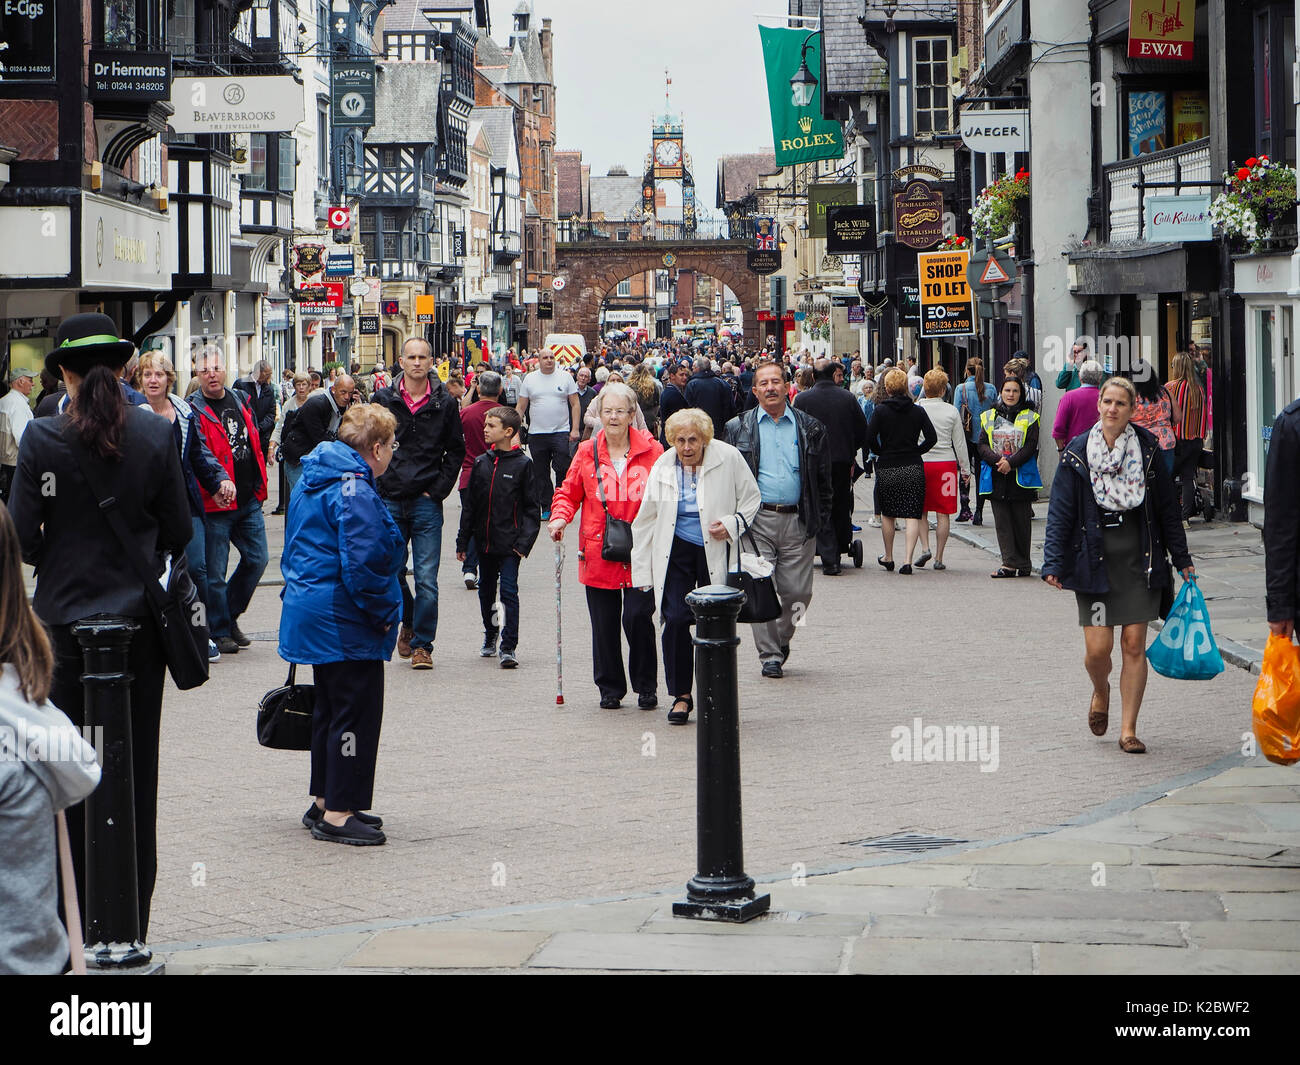 La folla di turisti nel centro di Chester Foto Stock